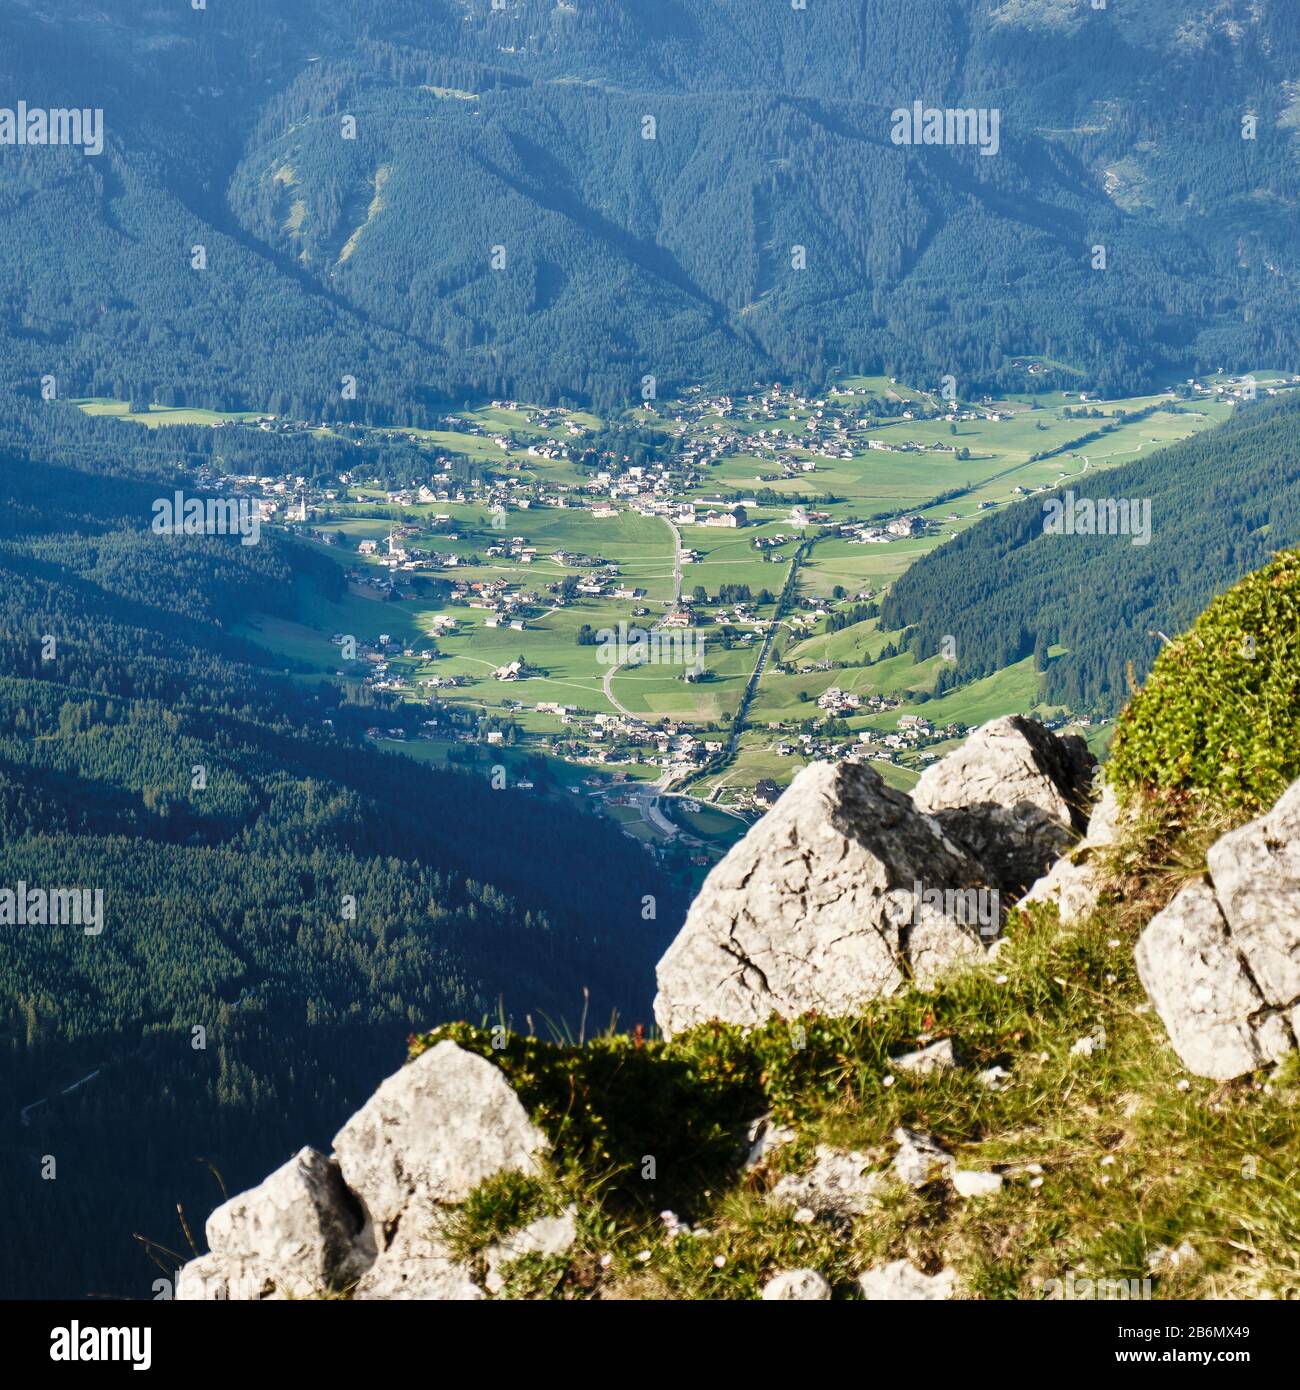 Gosau pueblo y valle en Austria, rodeado de bosques verdes - vista desde una vía ferrata ruta en las montañas de Donnerkogel. Foto de stock